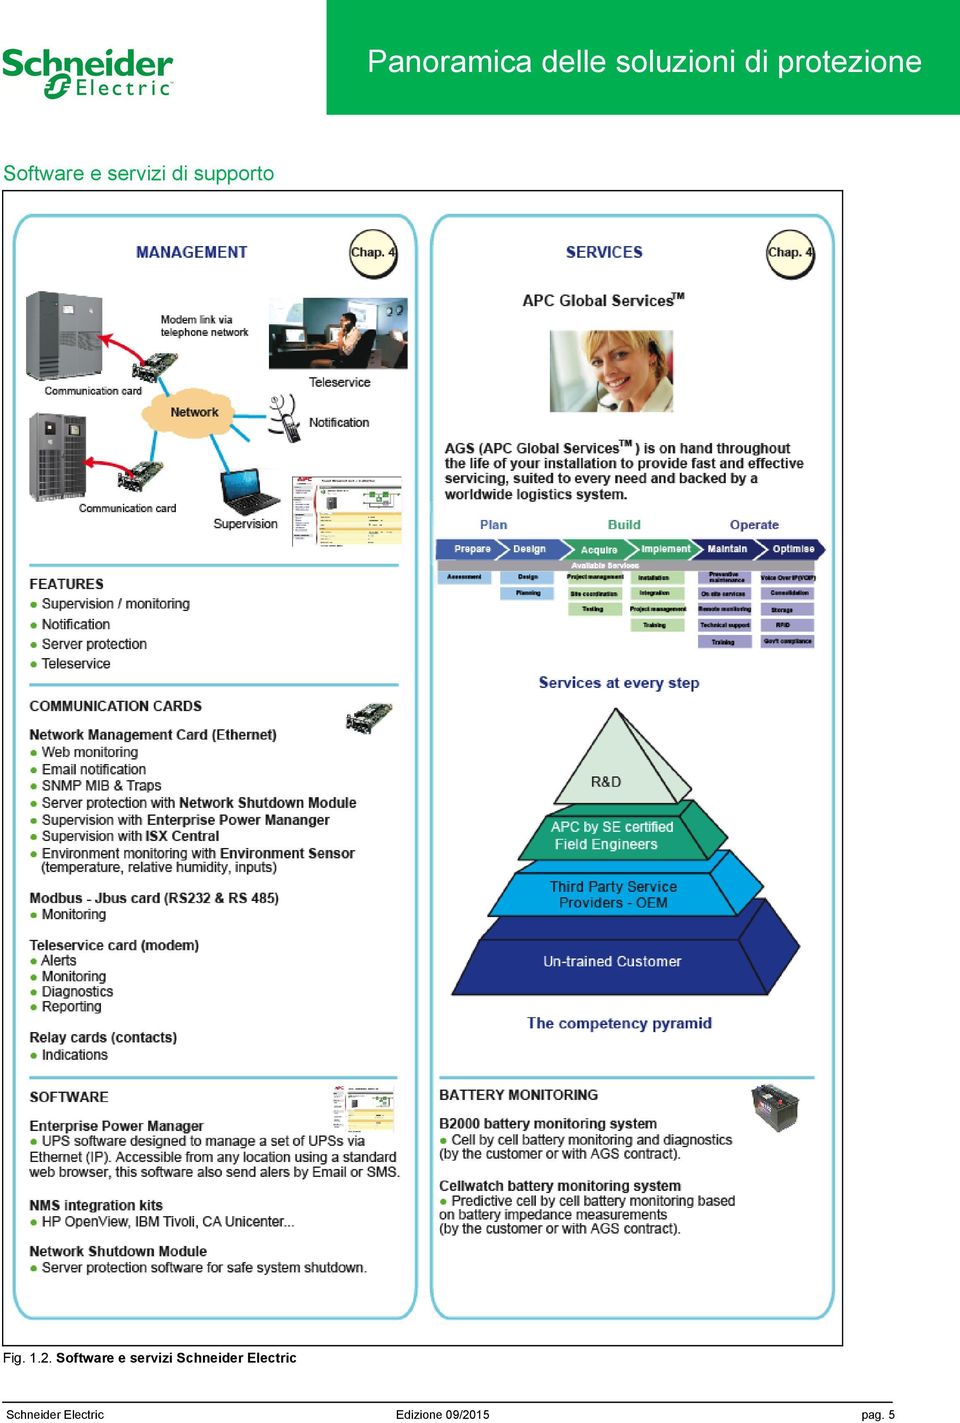 Software e servizi Schneider Electric